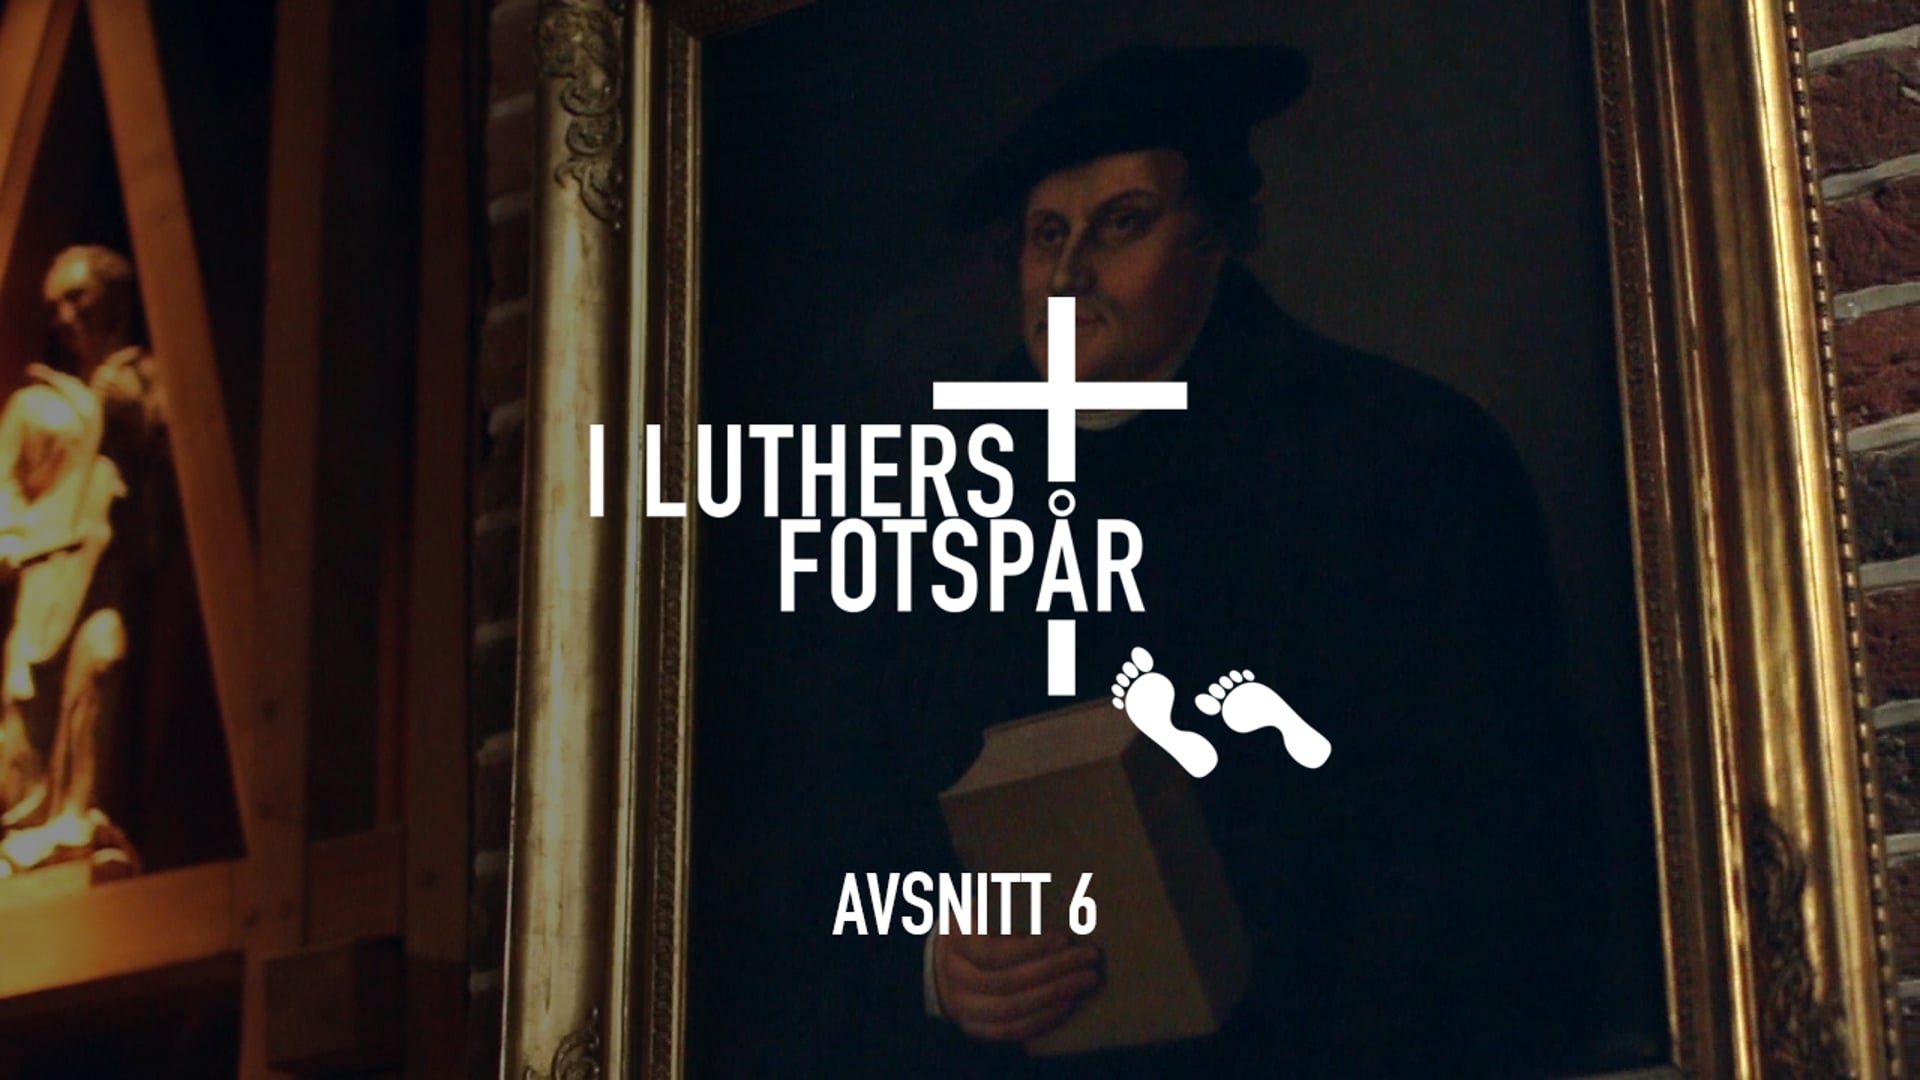 I Luthers fotspår – Avsnitt 6